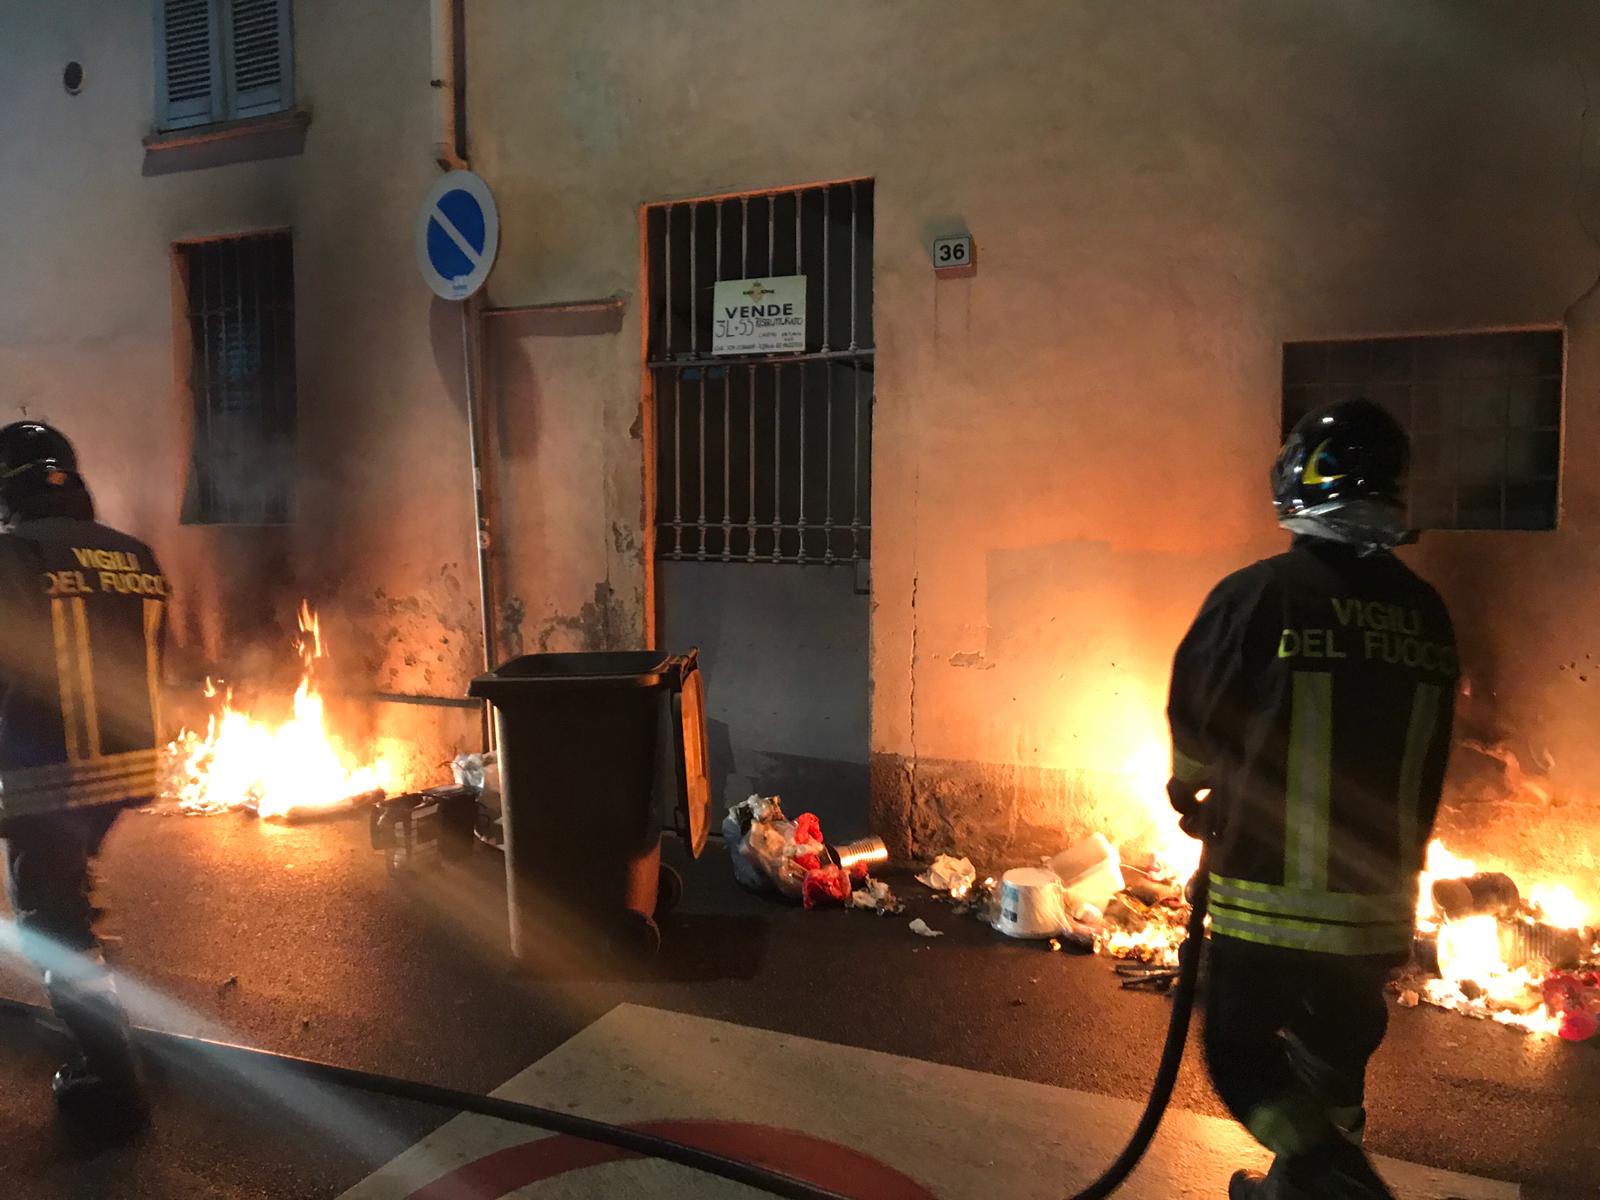 Ieri su ilS: scontro mortale le domande e il cordoglio, 6 incendi a Saronno, preso piromane, botta e risposta Anpi e Airoldi